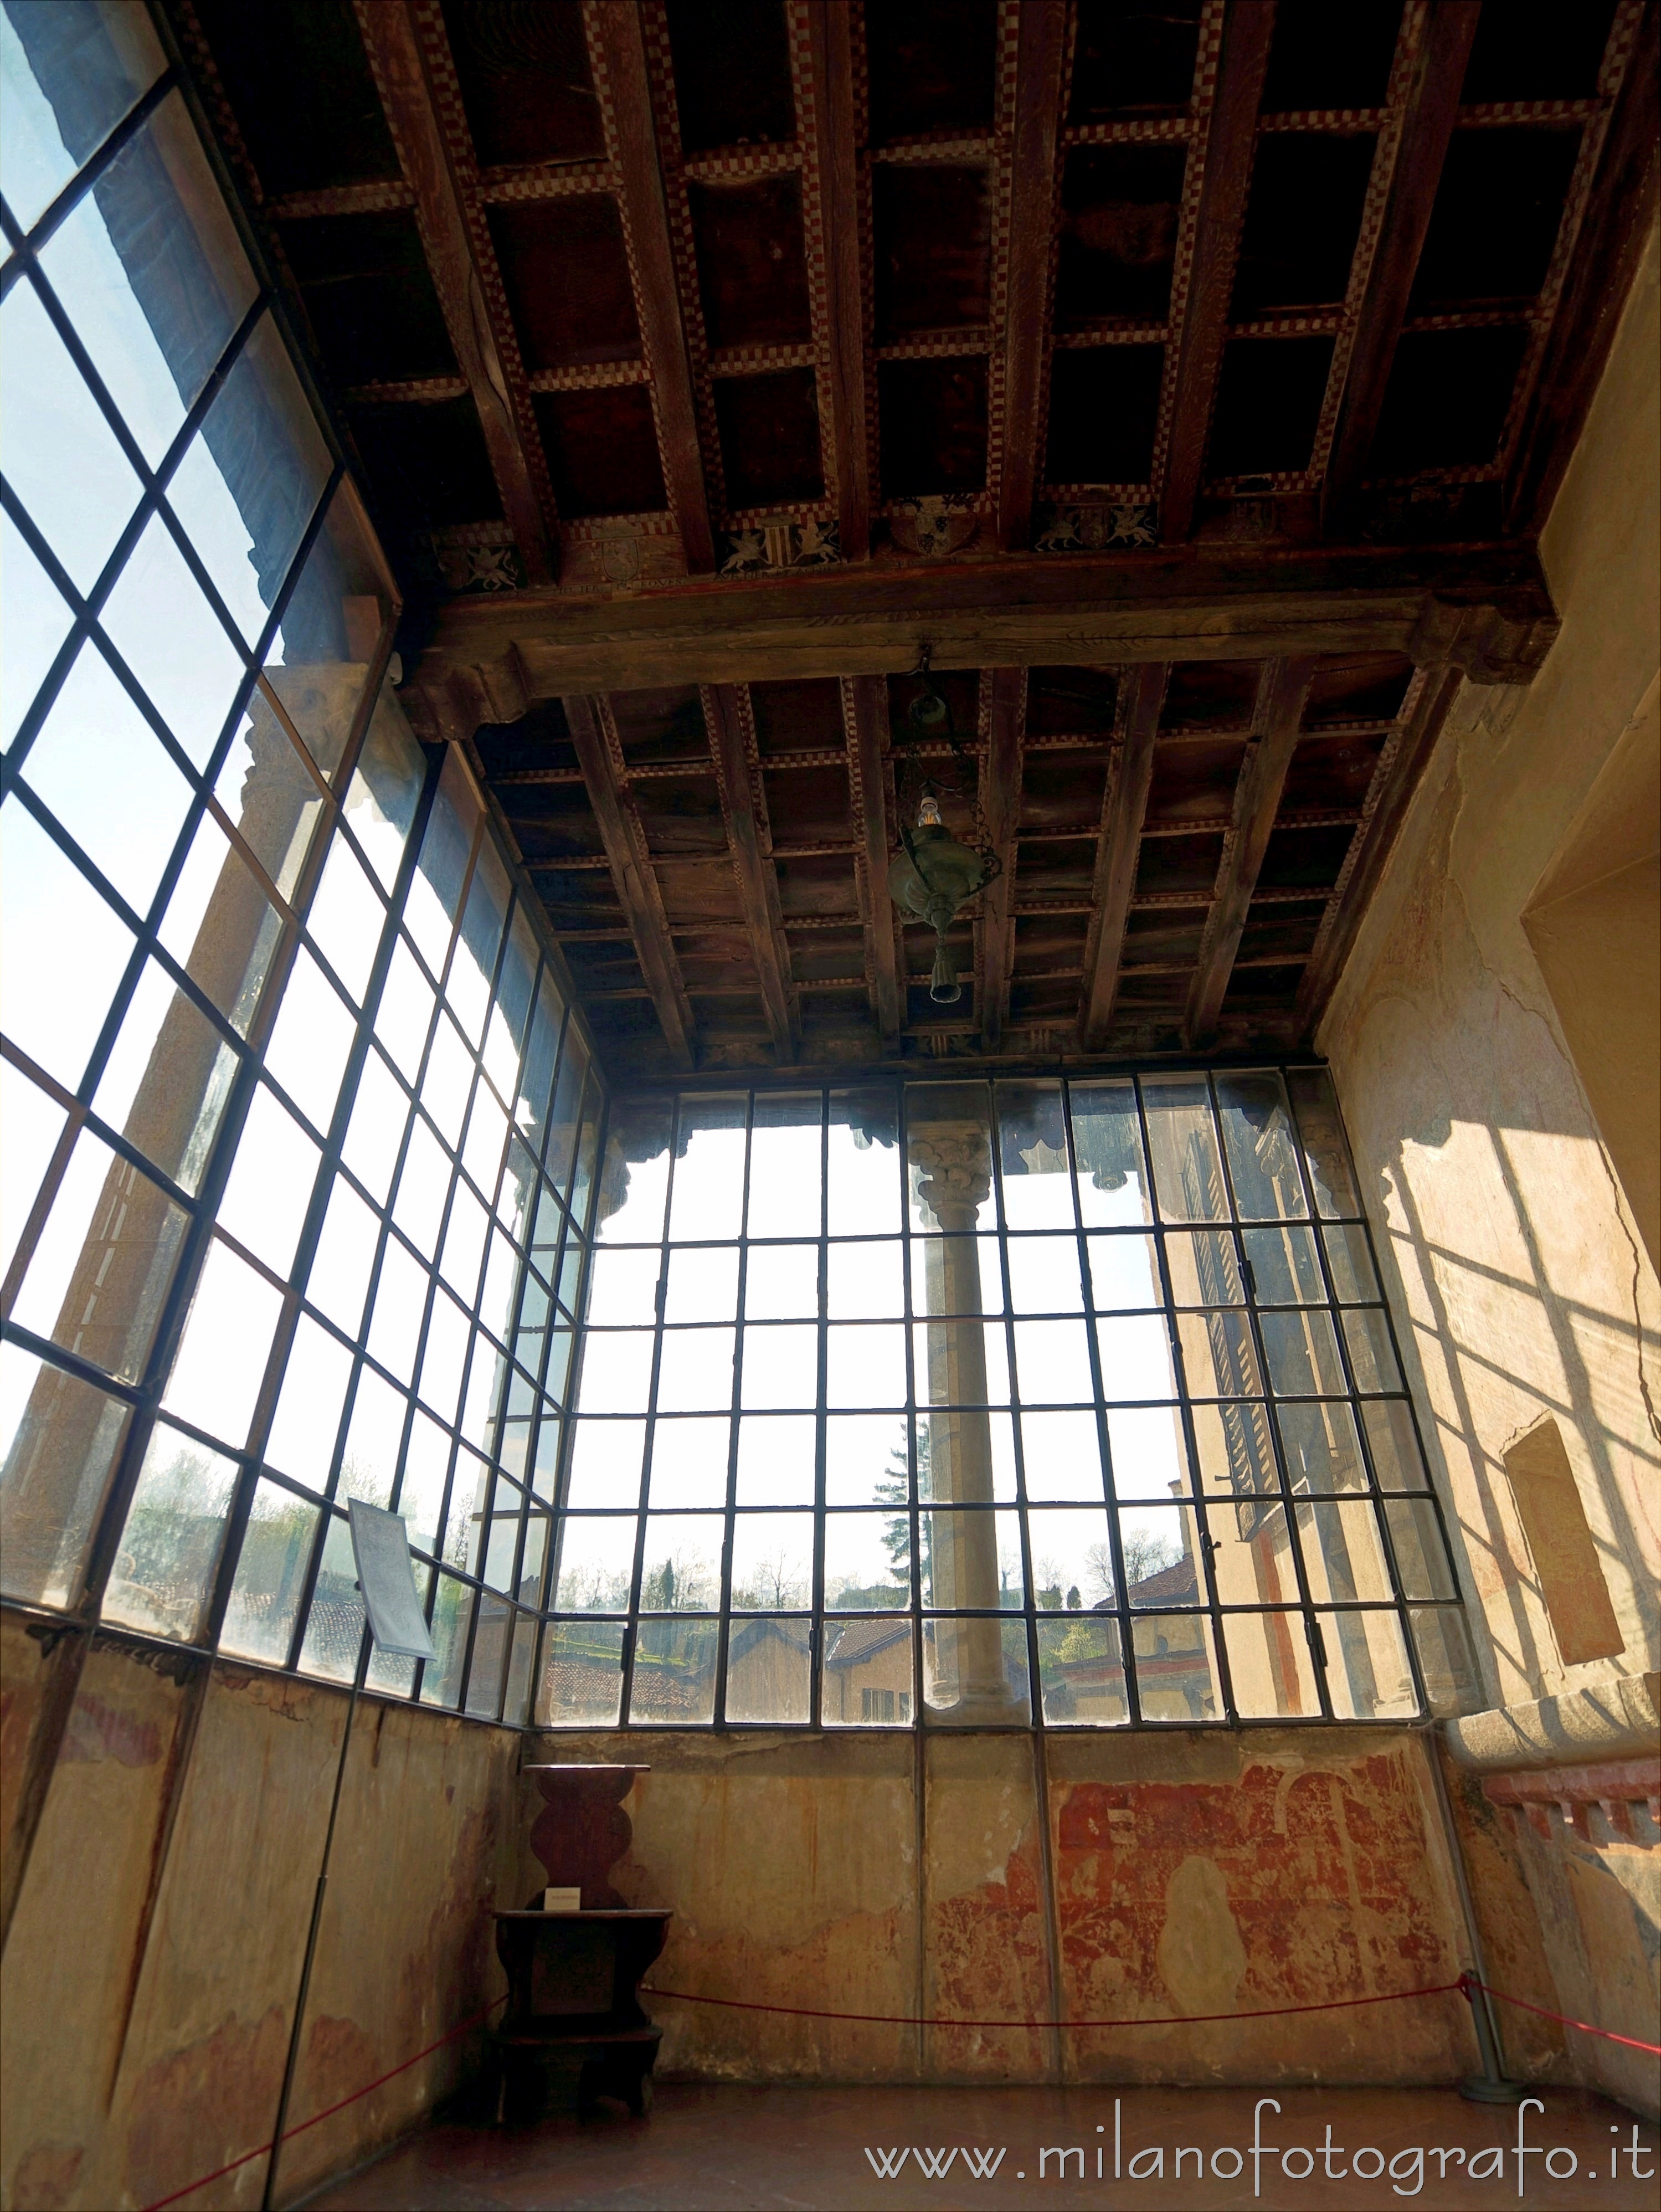 Castiglione Olona (Varese, Italy): Interior of the loggia of Branda Palace - Castiglione Olona (Varese, Italy)